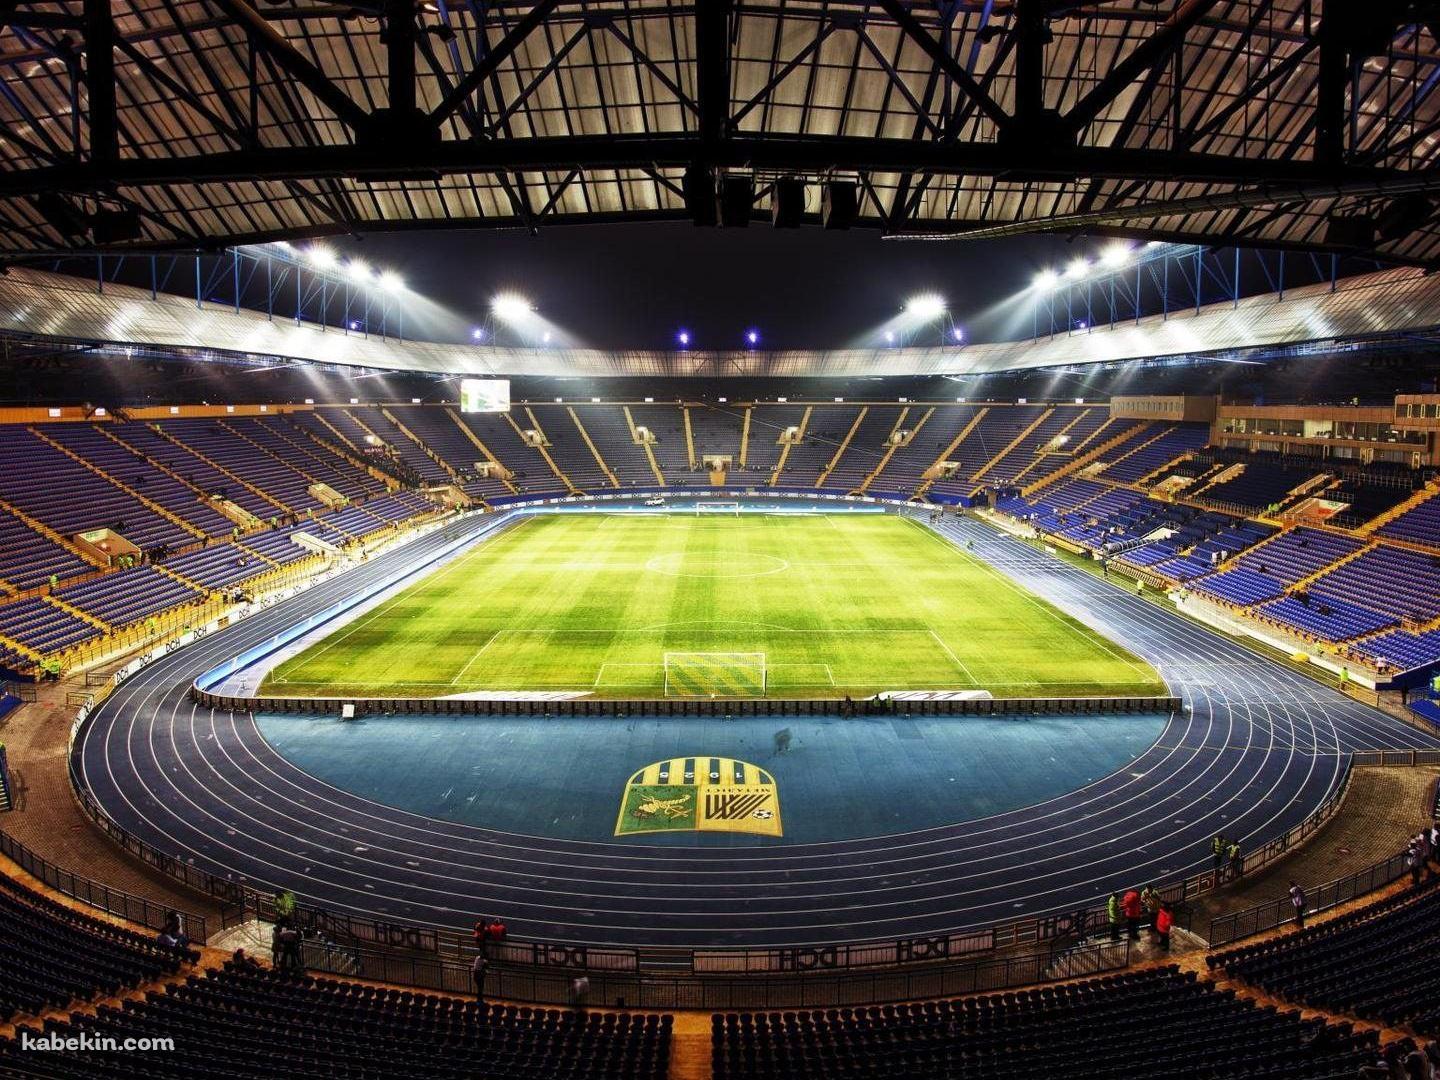 欧州サッカーのスタジアムの壁紙(1440px x 1080px) 高画質 PC・デスクトップ用